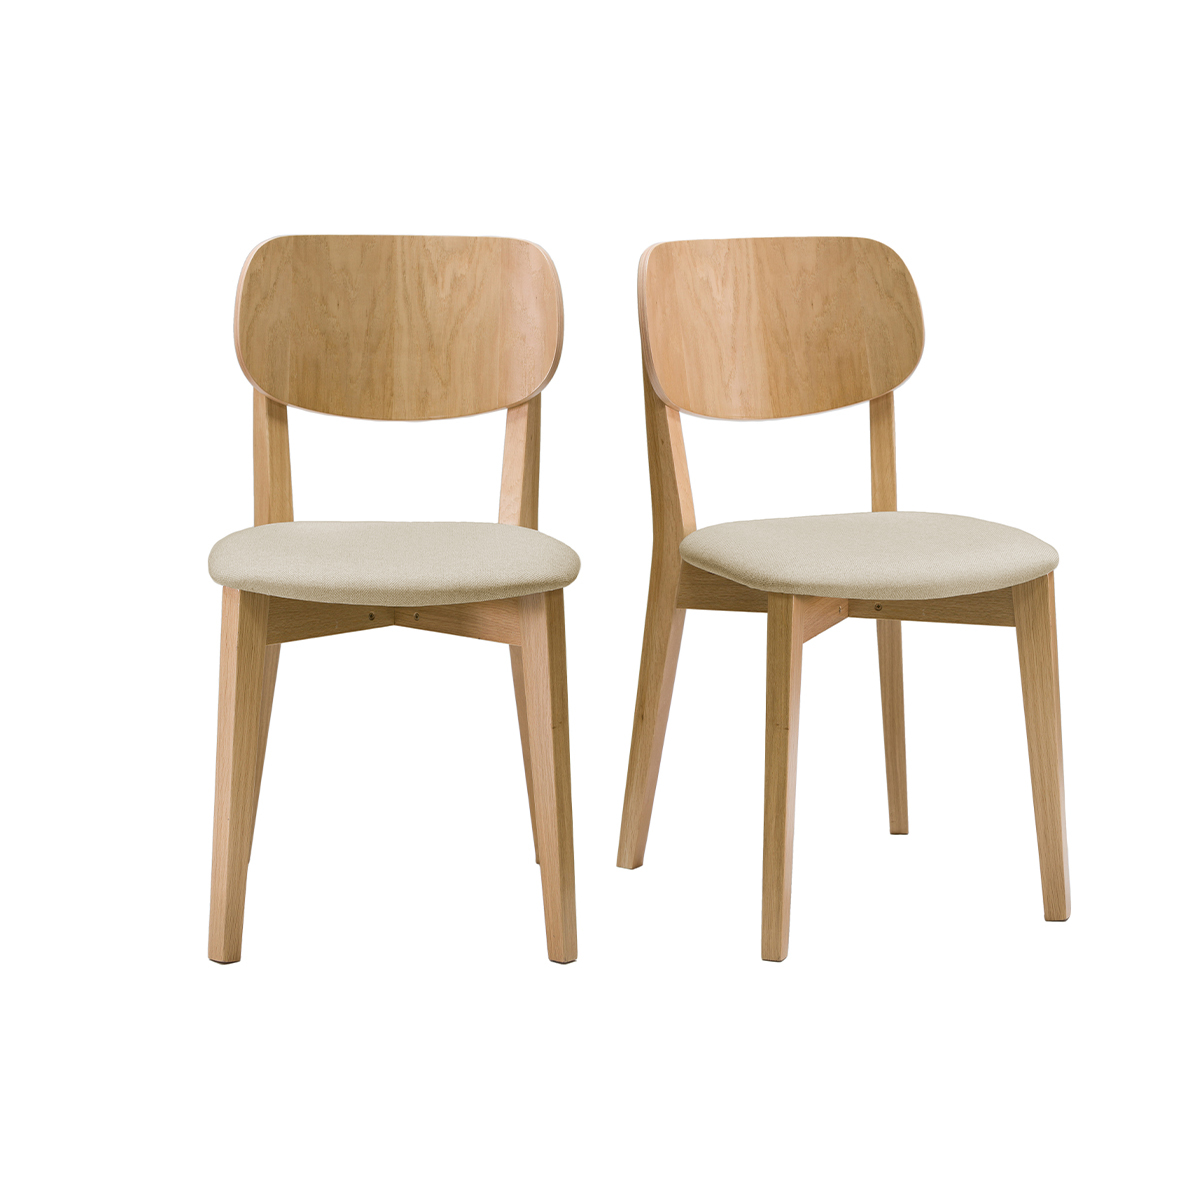 Chaises vintage chêne et assise beige (lot de 2) LUCIA vue1